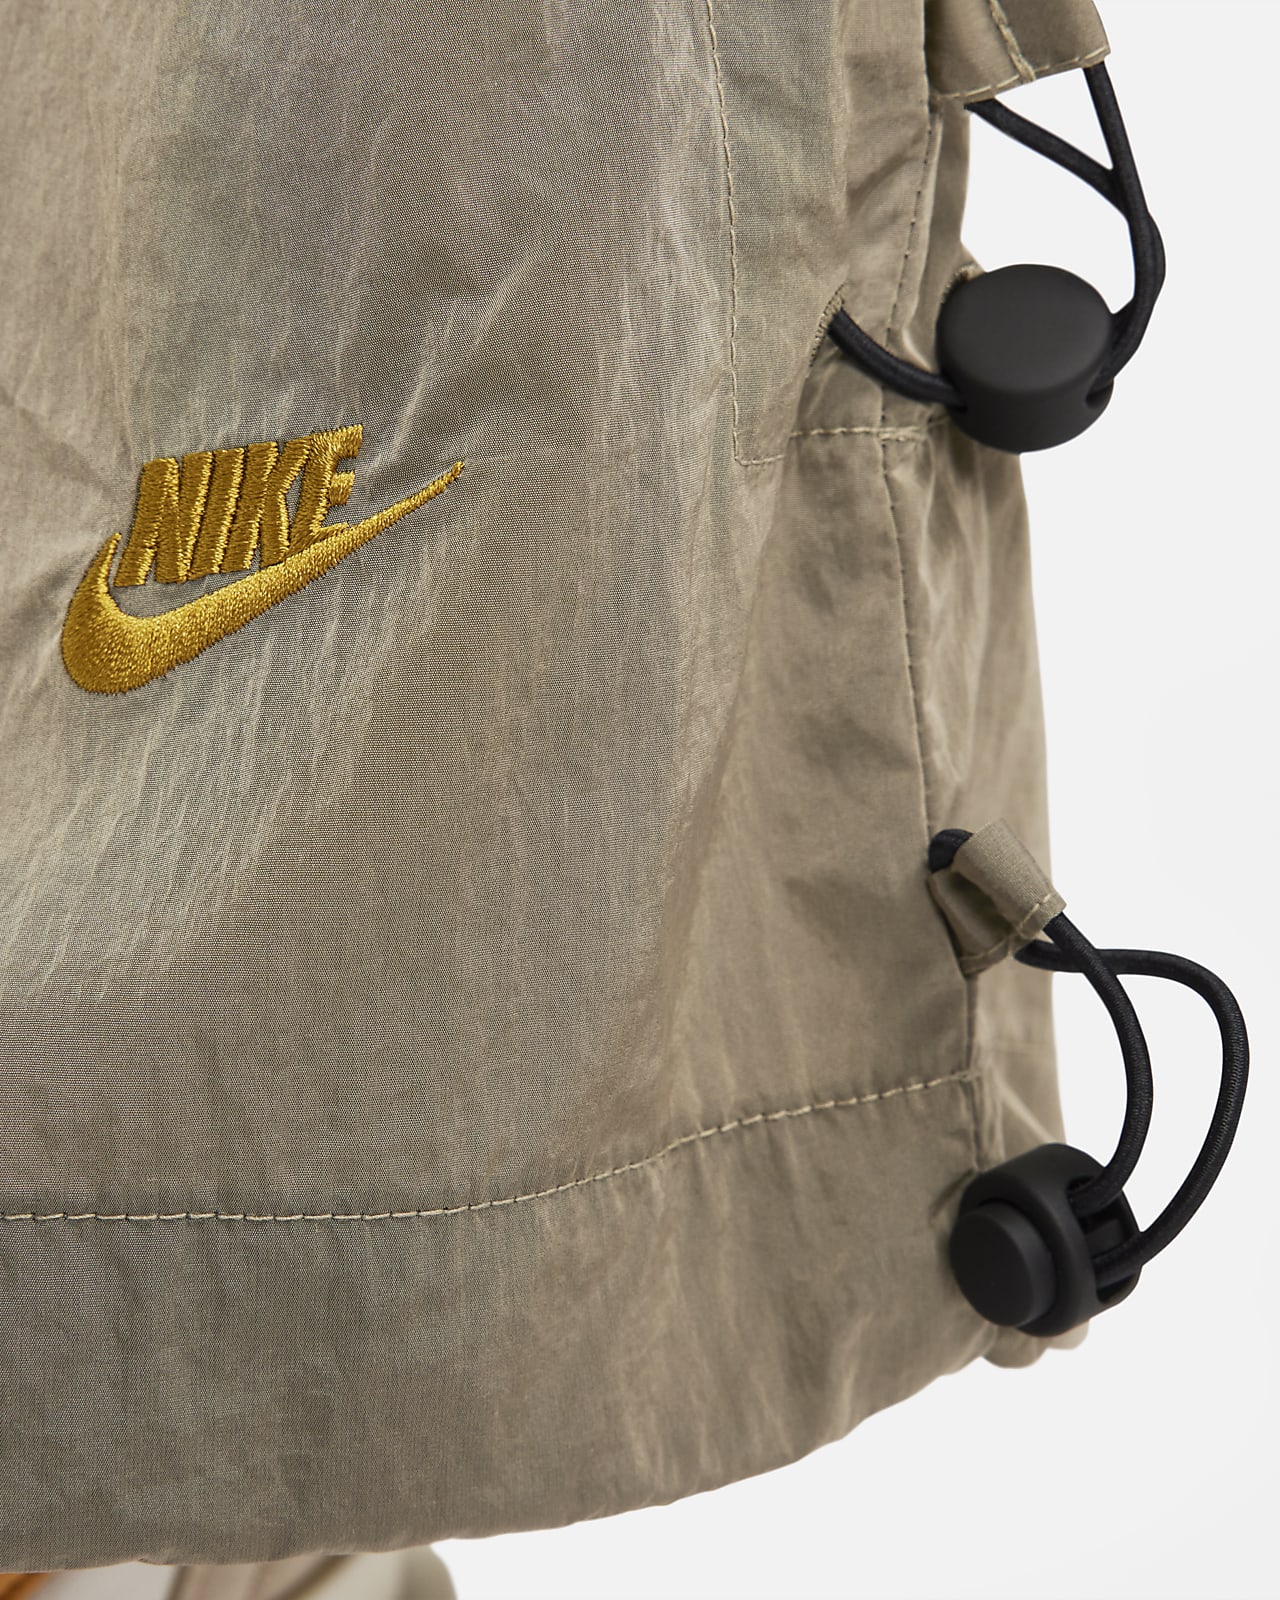 Buy Nike Women's Tech Pack Knit Running Leggings Grey in KSA -SSS